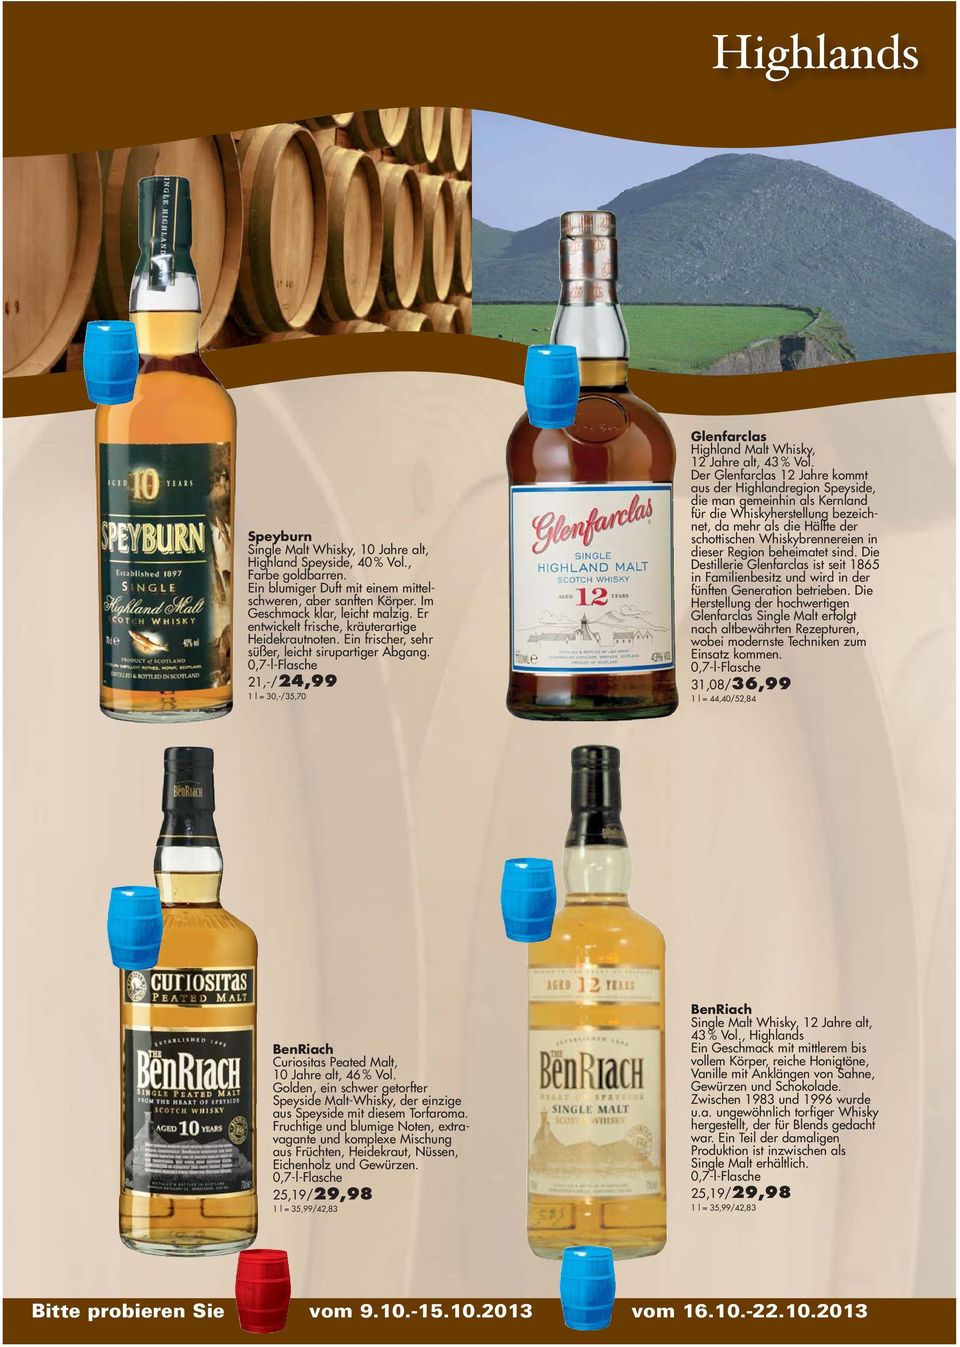 Der Glenfarclas 12 Jahre kommt aus der Highlandregion Speyside, die man gemeinhin als Kernland für die Whiskyherstellung bezeichnet, da mehr als die Hälfte der schottischen Whiskybrennereien in